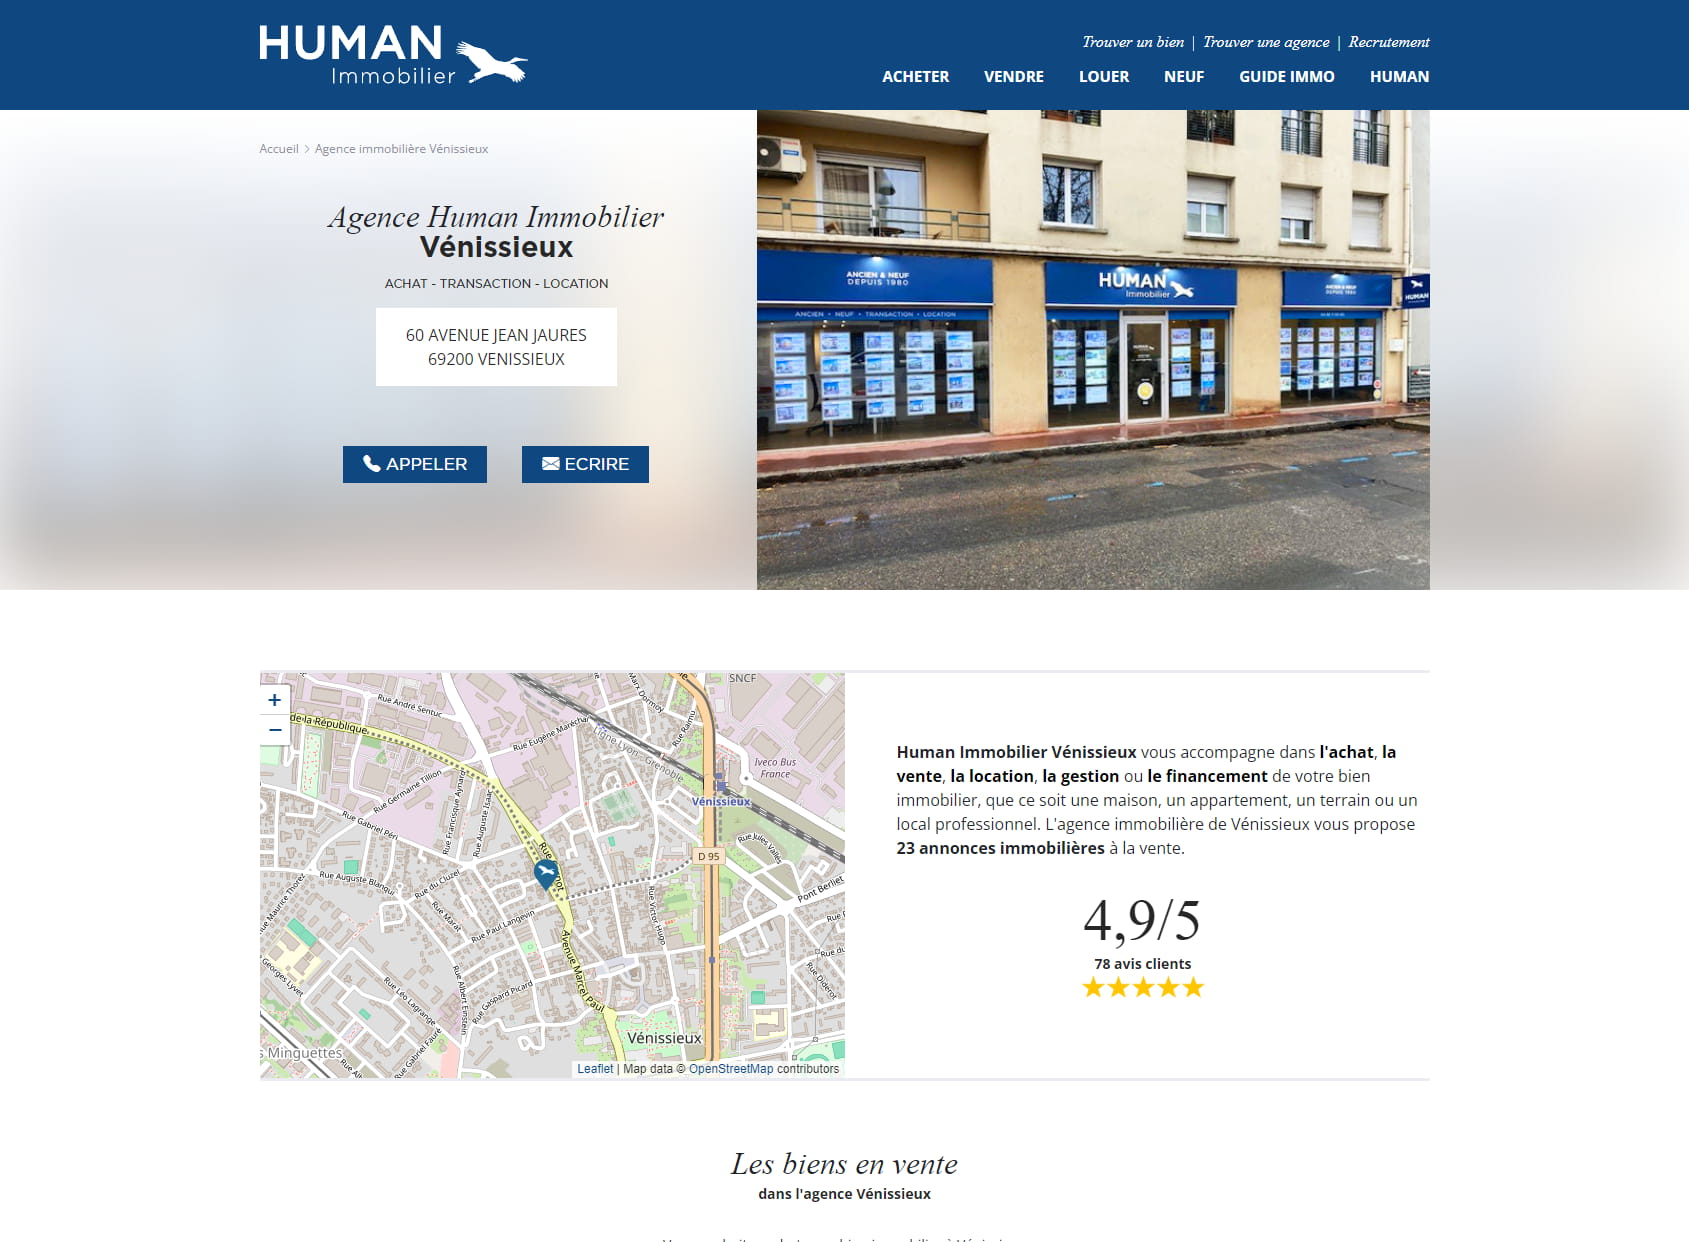 Human Immobilier Vénissieux